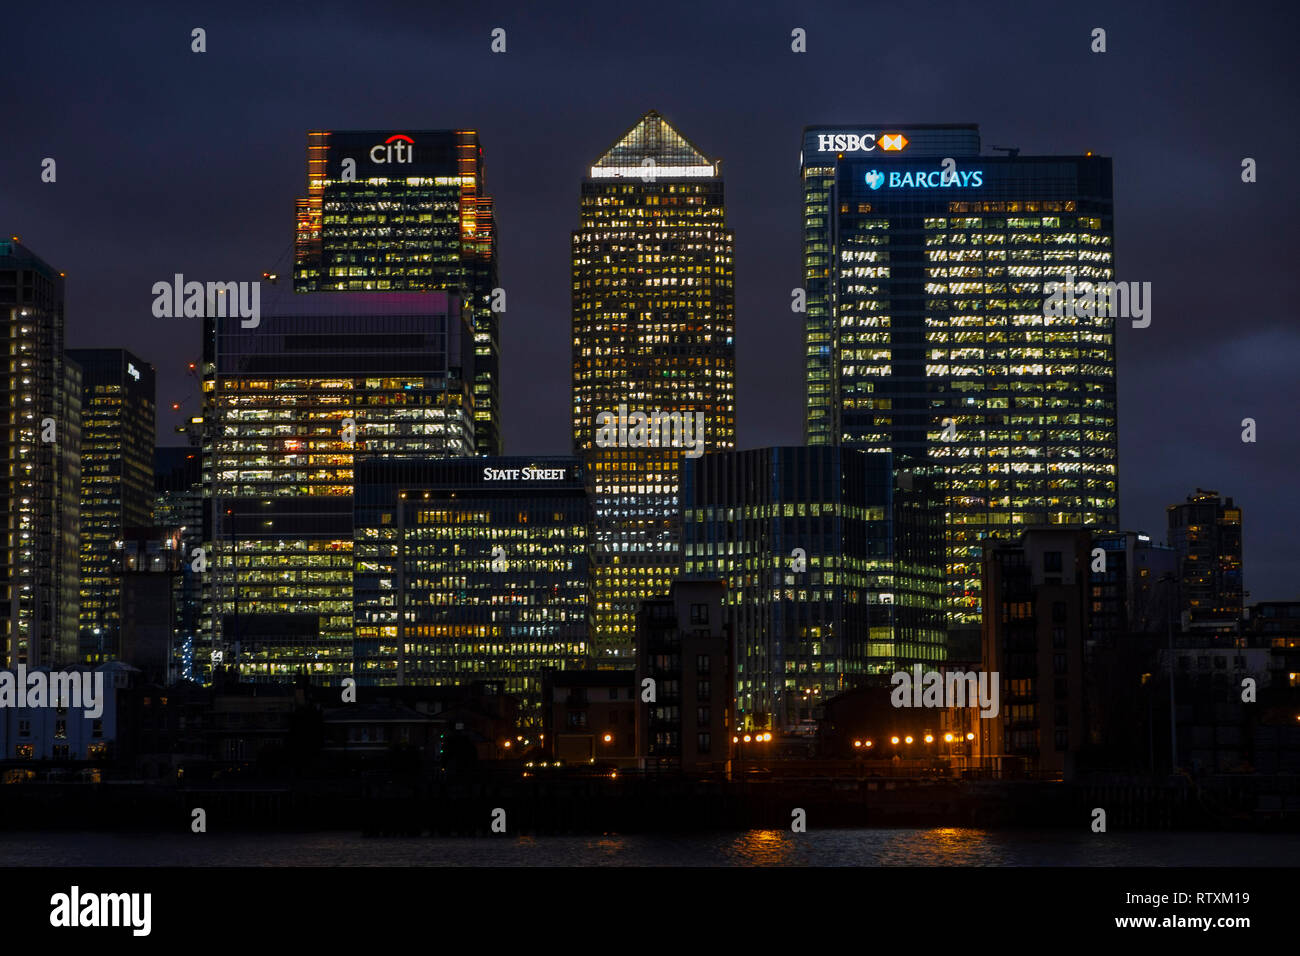 Canary Wharf con Barclays, HSBC, State Street e il citi il quartier generale a notte nei Docklands il quartiere finanziario di Londra Foto Stock